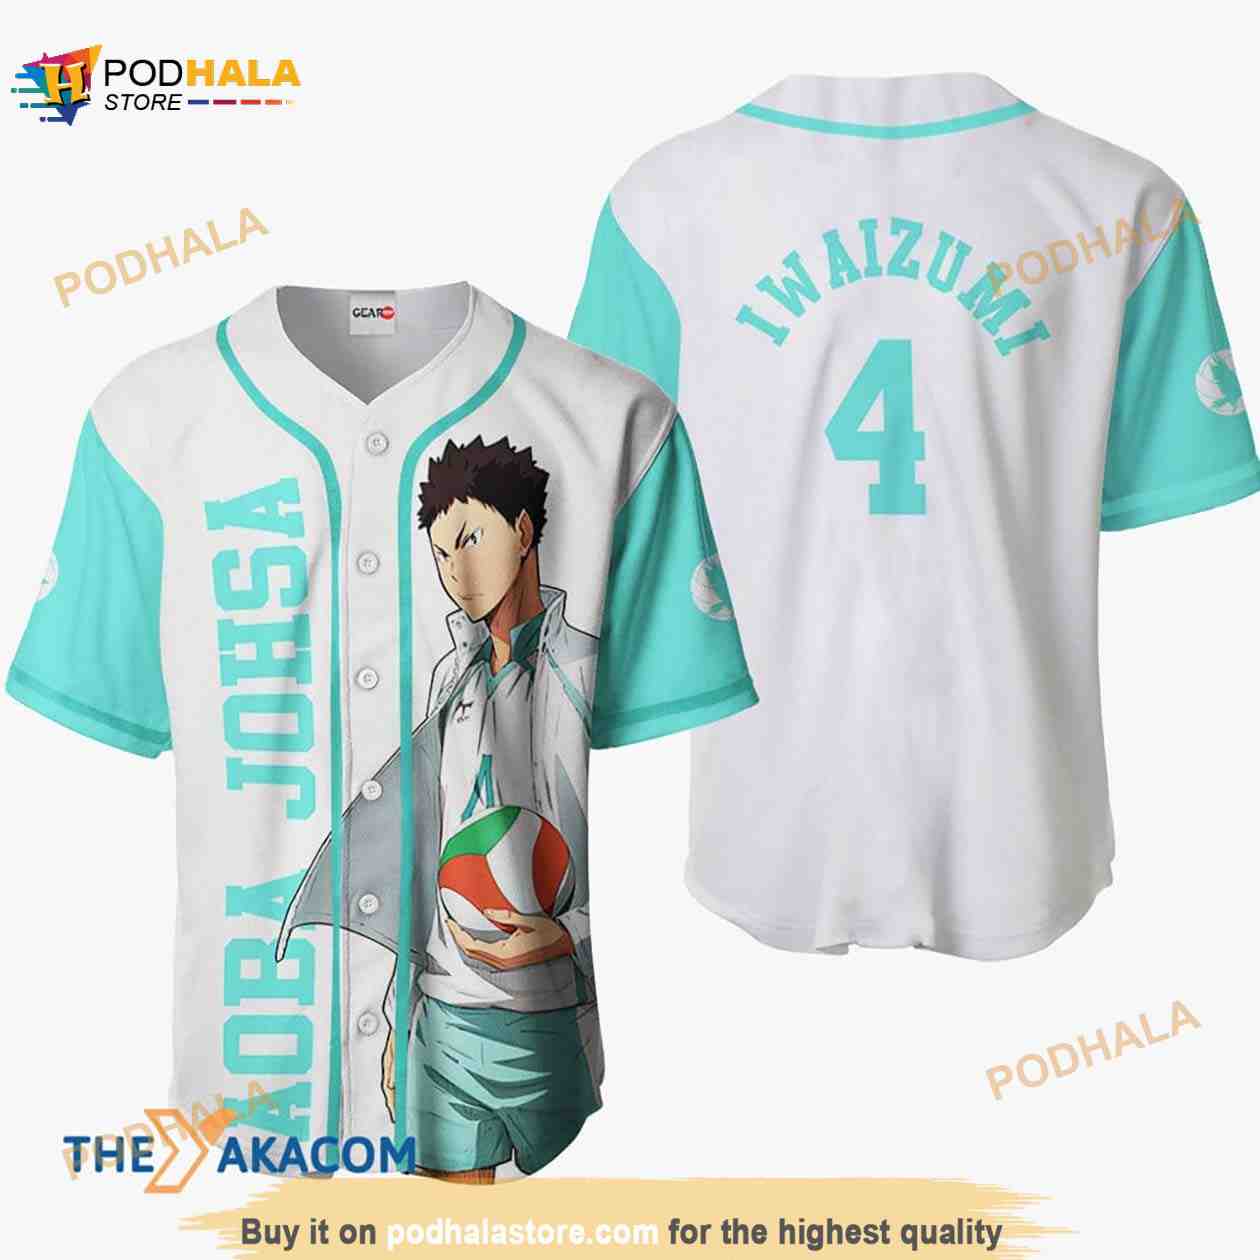 Inarizaki Custom Haikyuu Anime Jersey Baseball Shirt For Fans